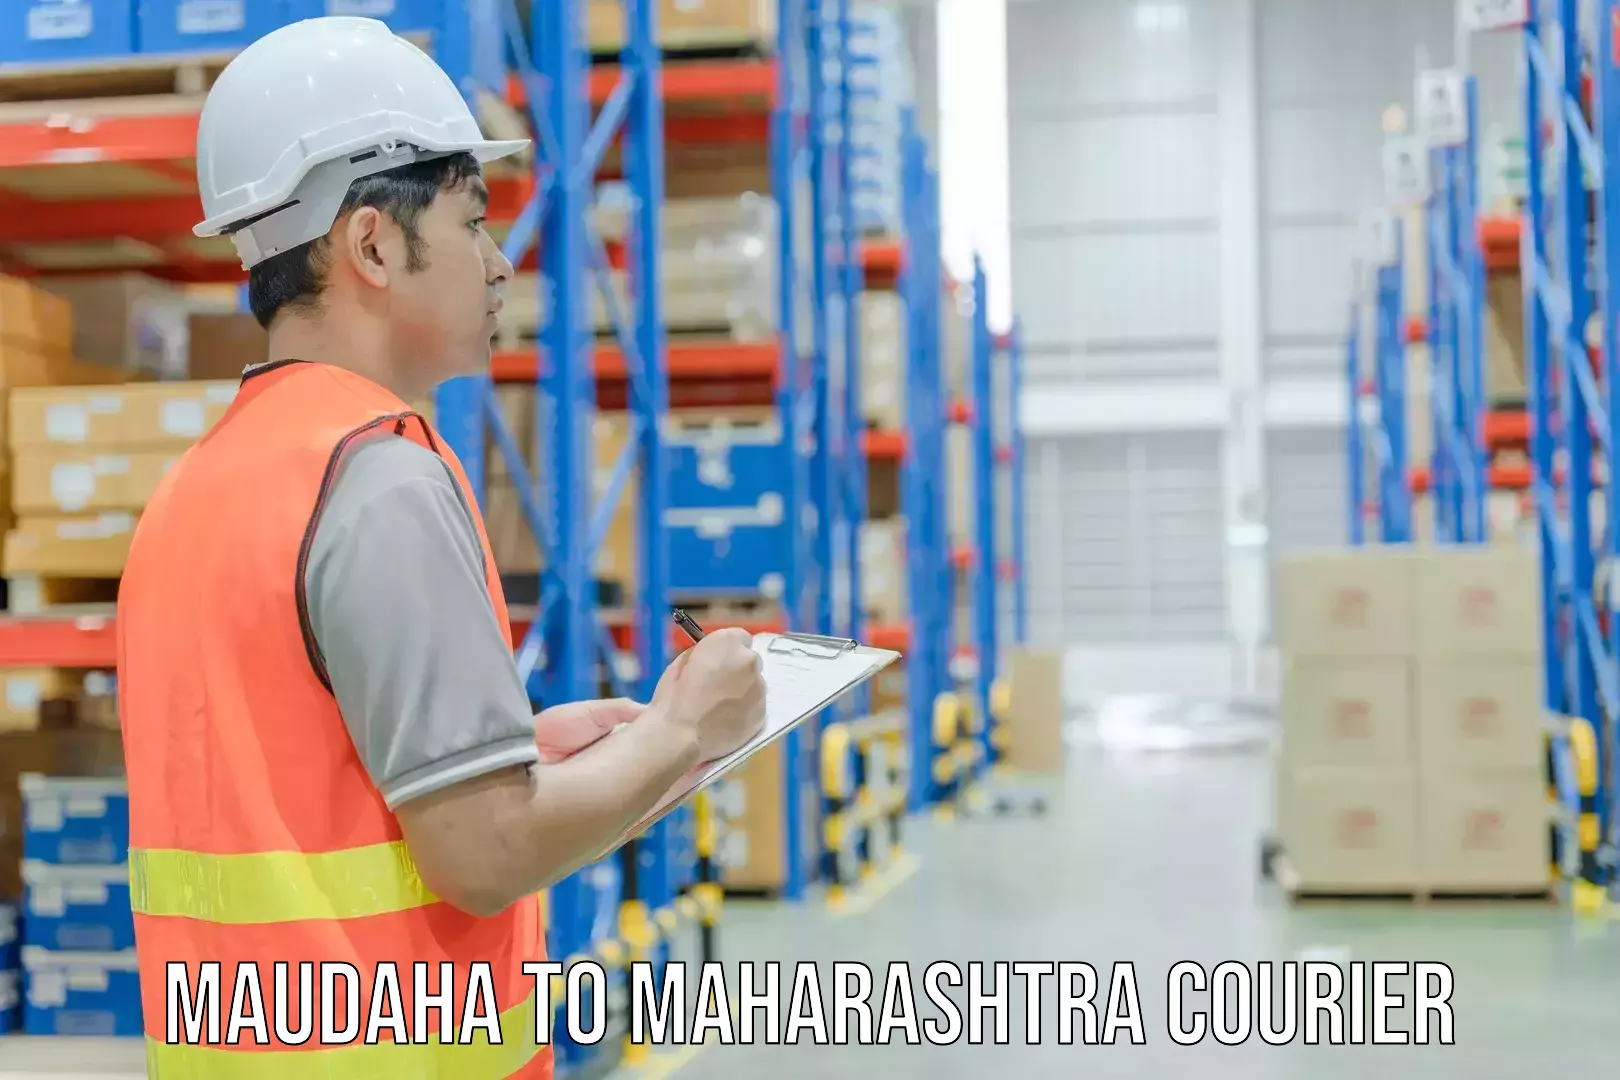 Courier service comparison Maudaha to Jath